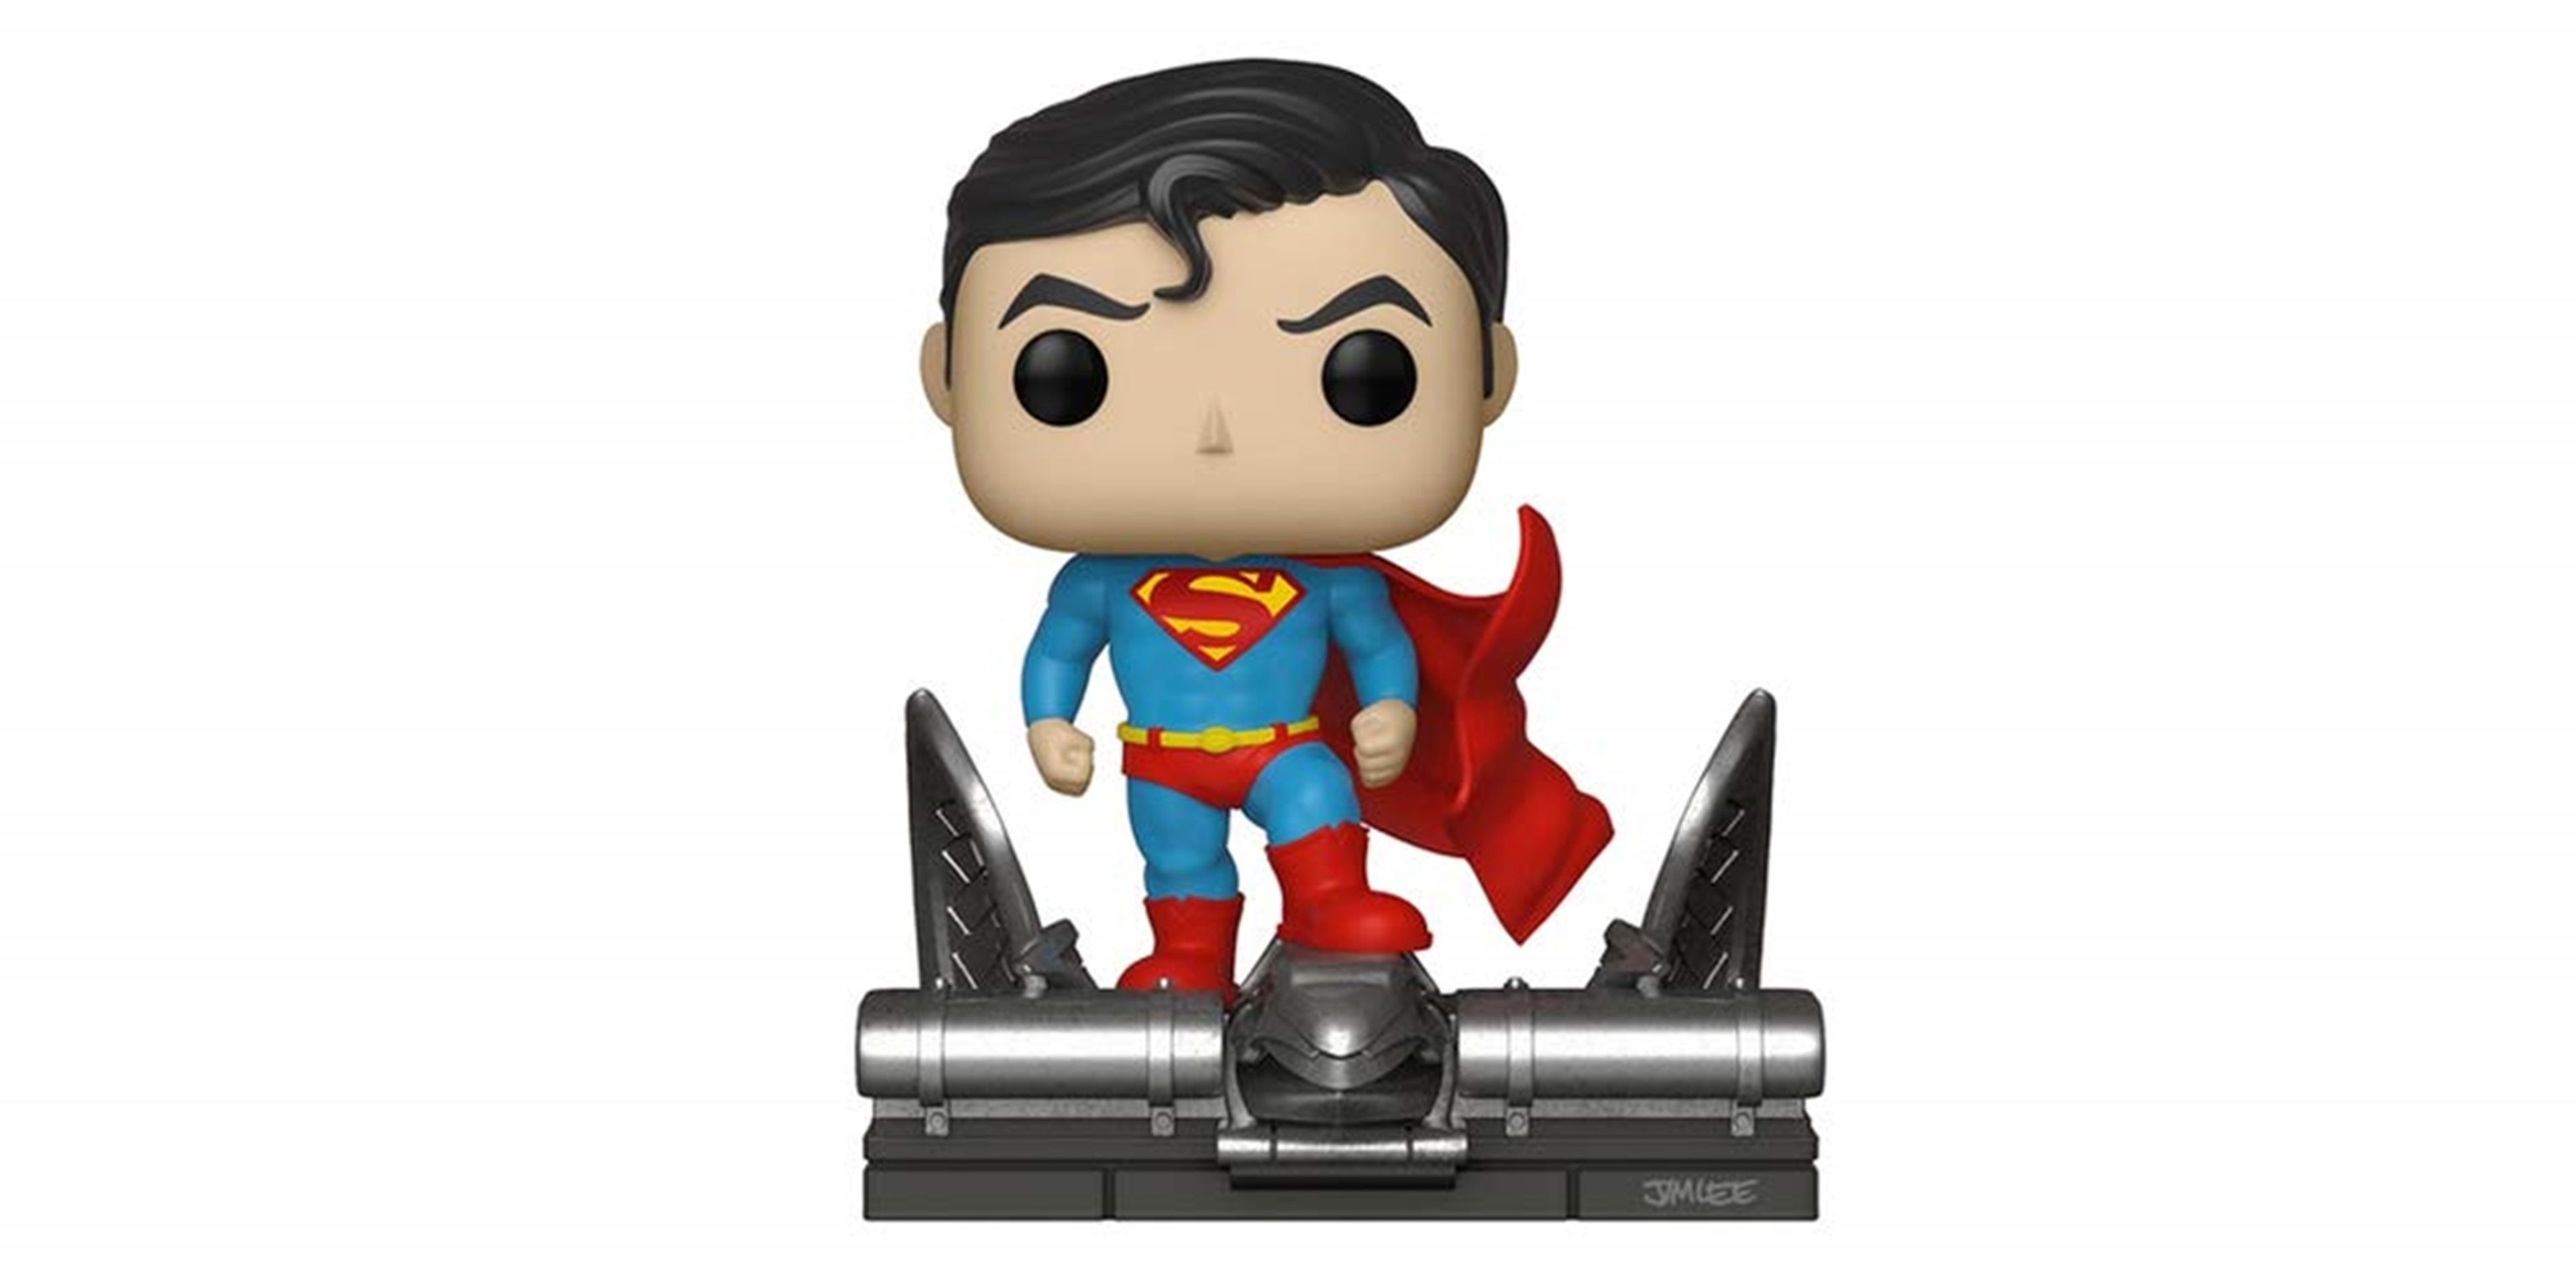 Compra aquí la figura Funko Pop de Superman sobre una gárgola